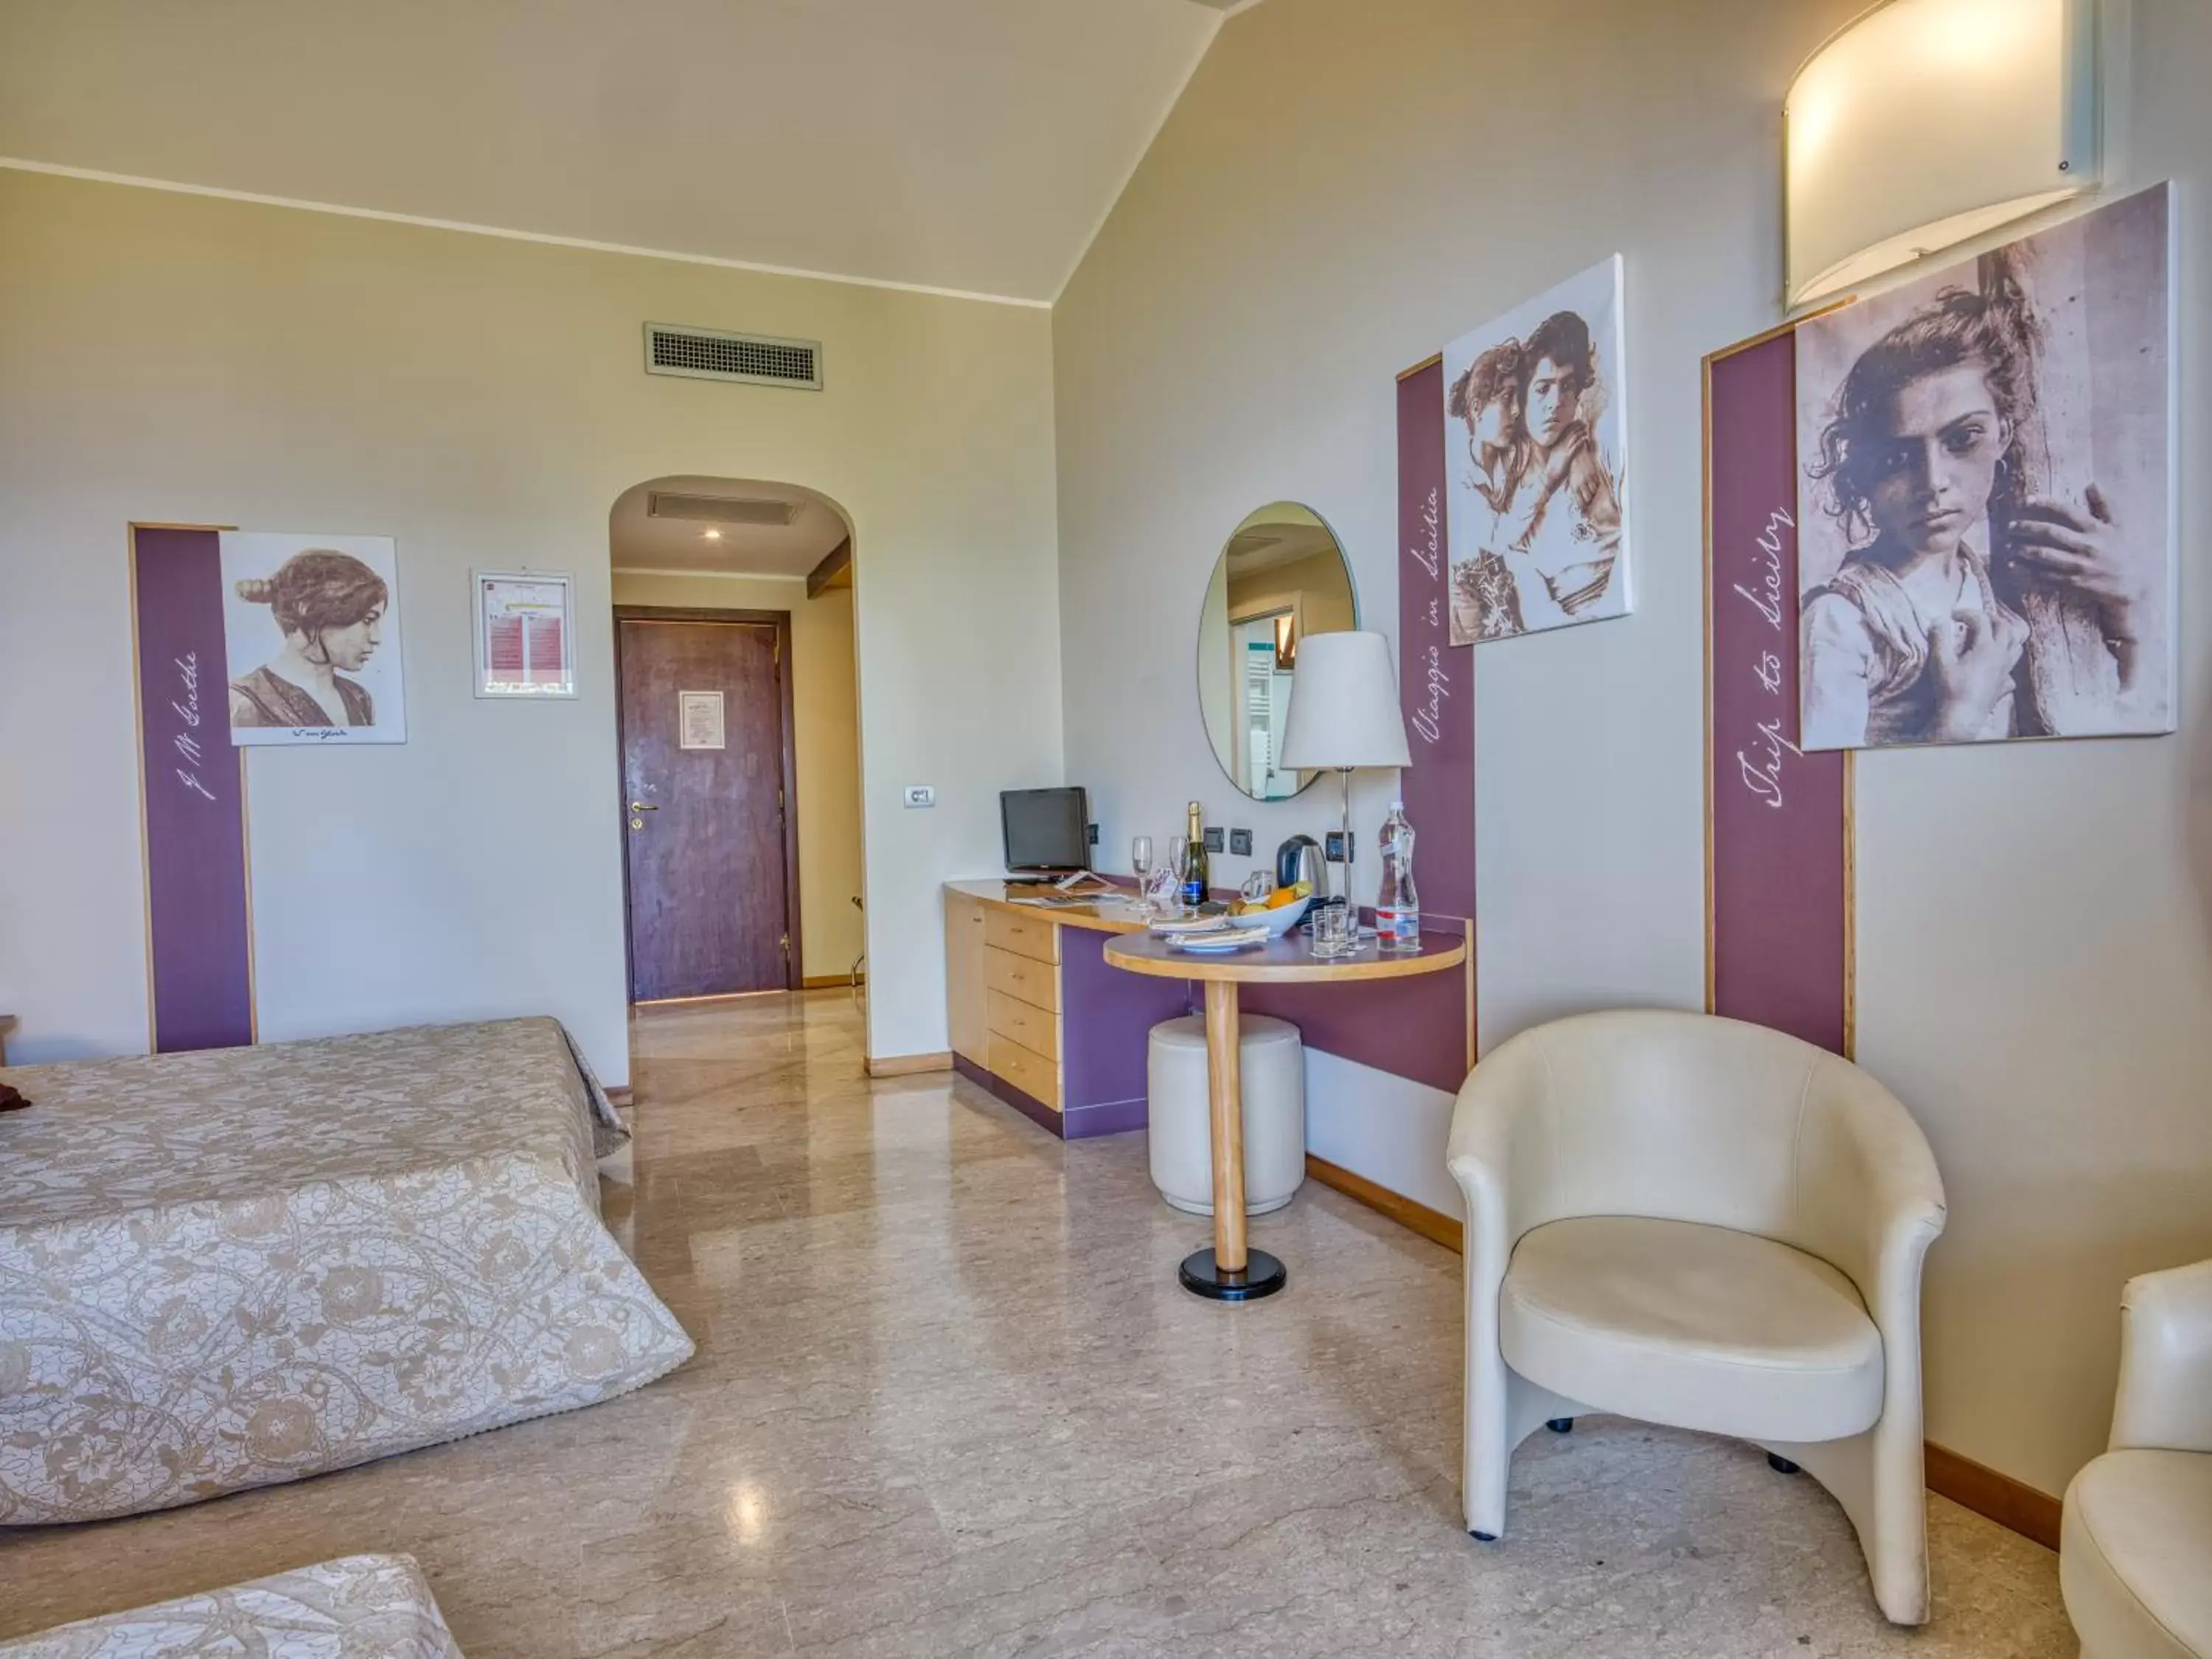 Bathroom, Lobby/Reception in Hotel Ariston and Palazzo Santa Caterina